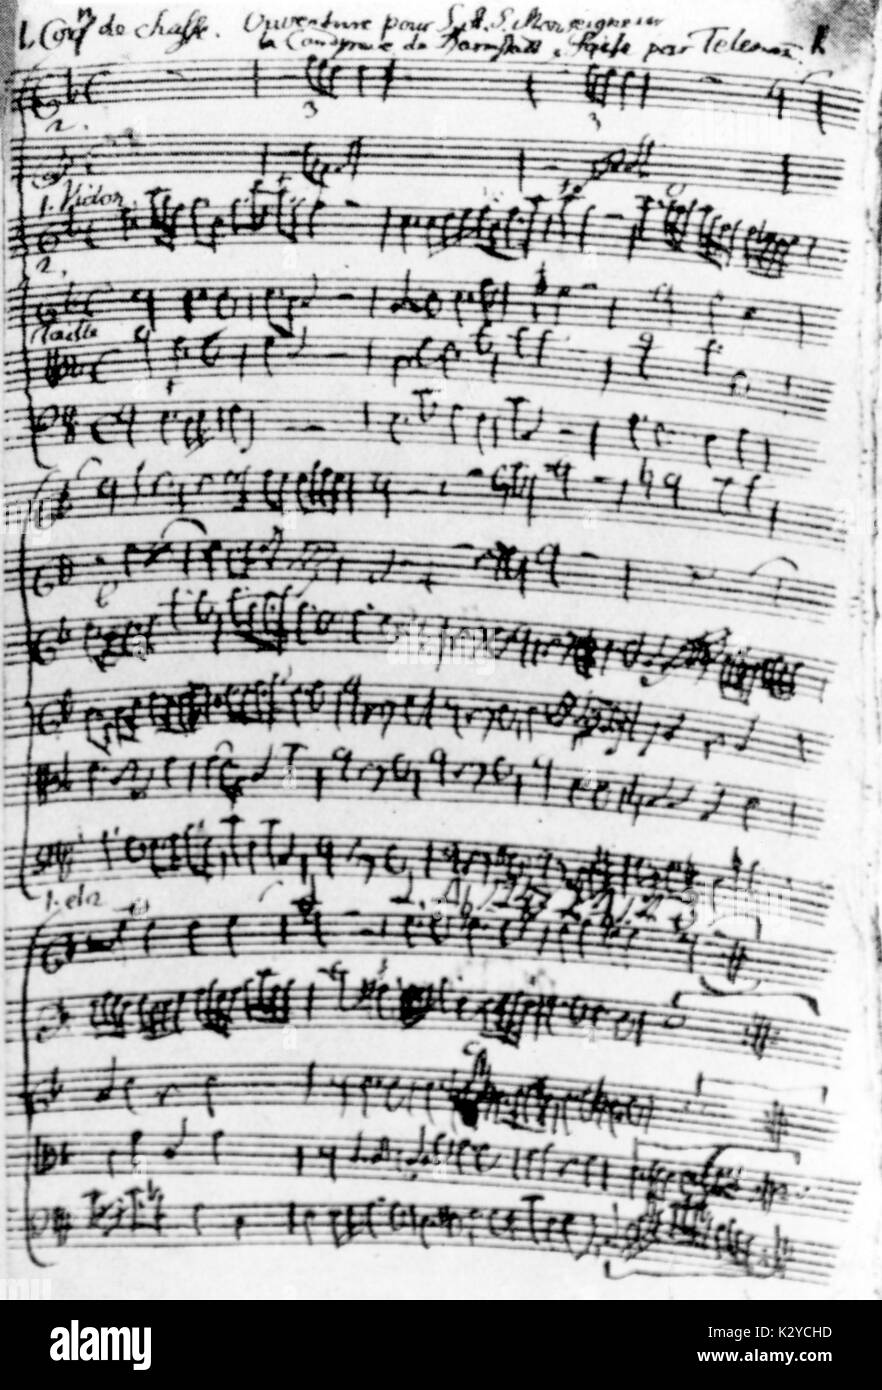 TELEMANN, Georg Philip - Composition Page 1 de compositions instrumentales (ouvertures, sinfonias, divertimenti etc) composé de Telemann 1691-1767 lorsqu'il a été de 86, pour Louis VIII de Hesse-Darmstadt. Compositeur allemand (1681-1767). Banque D'Images